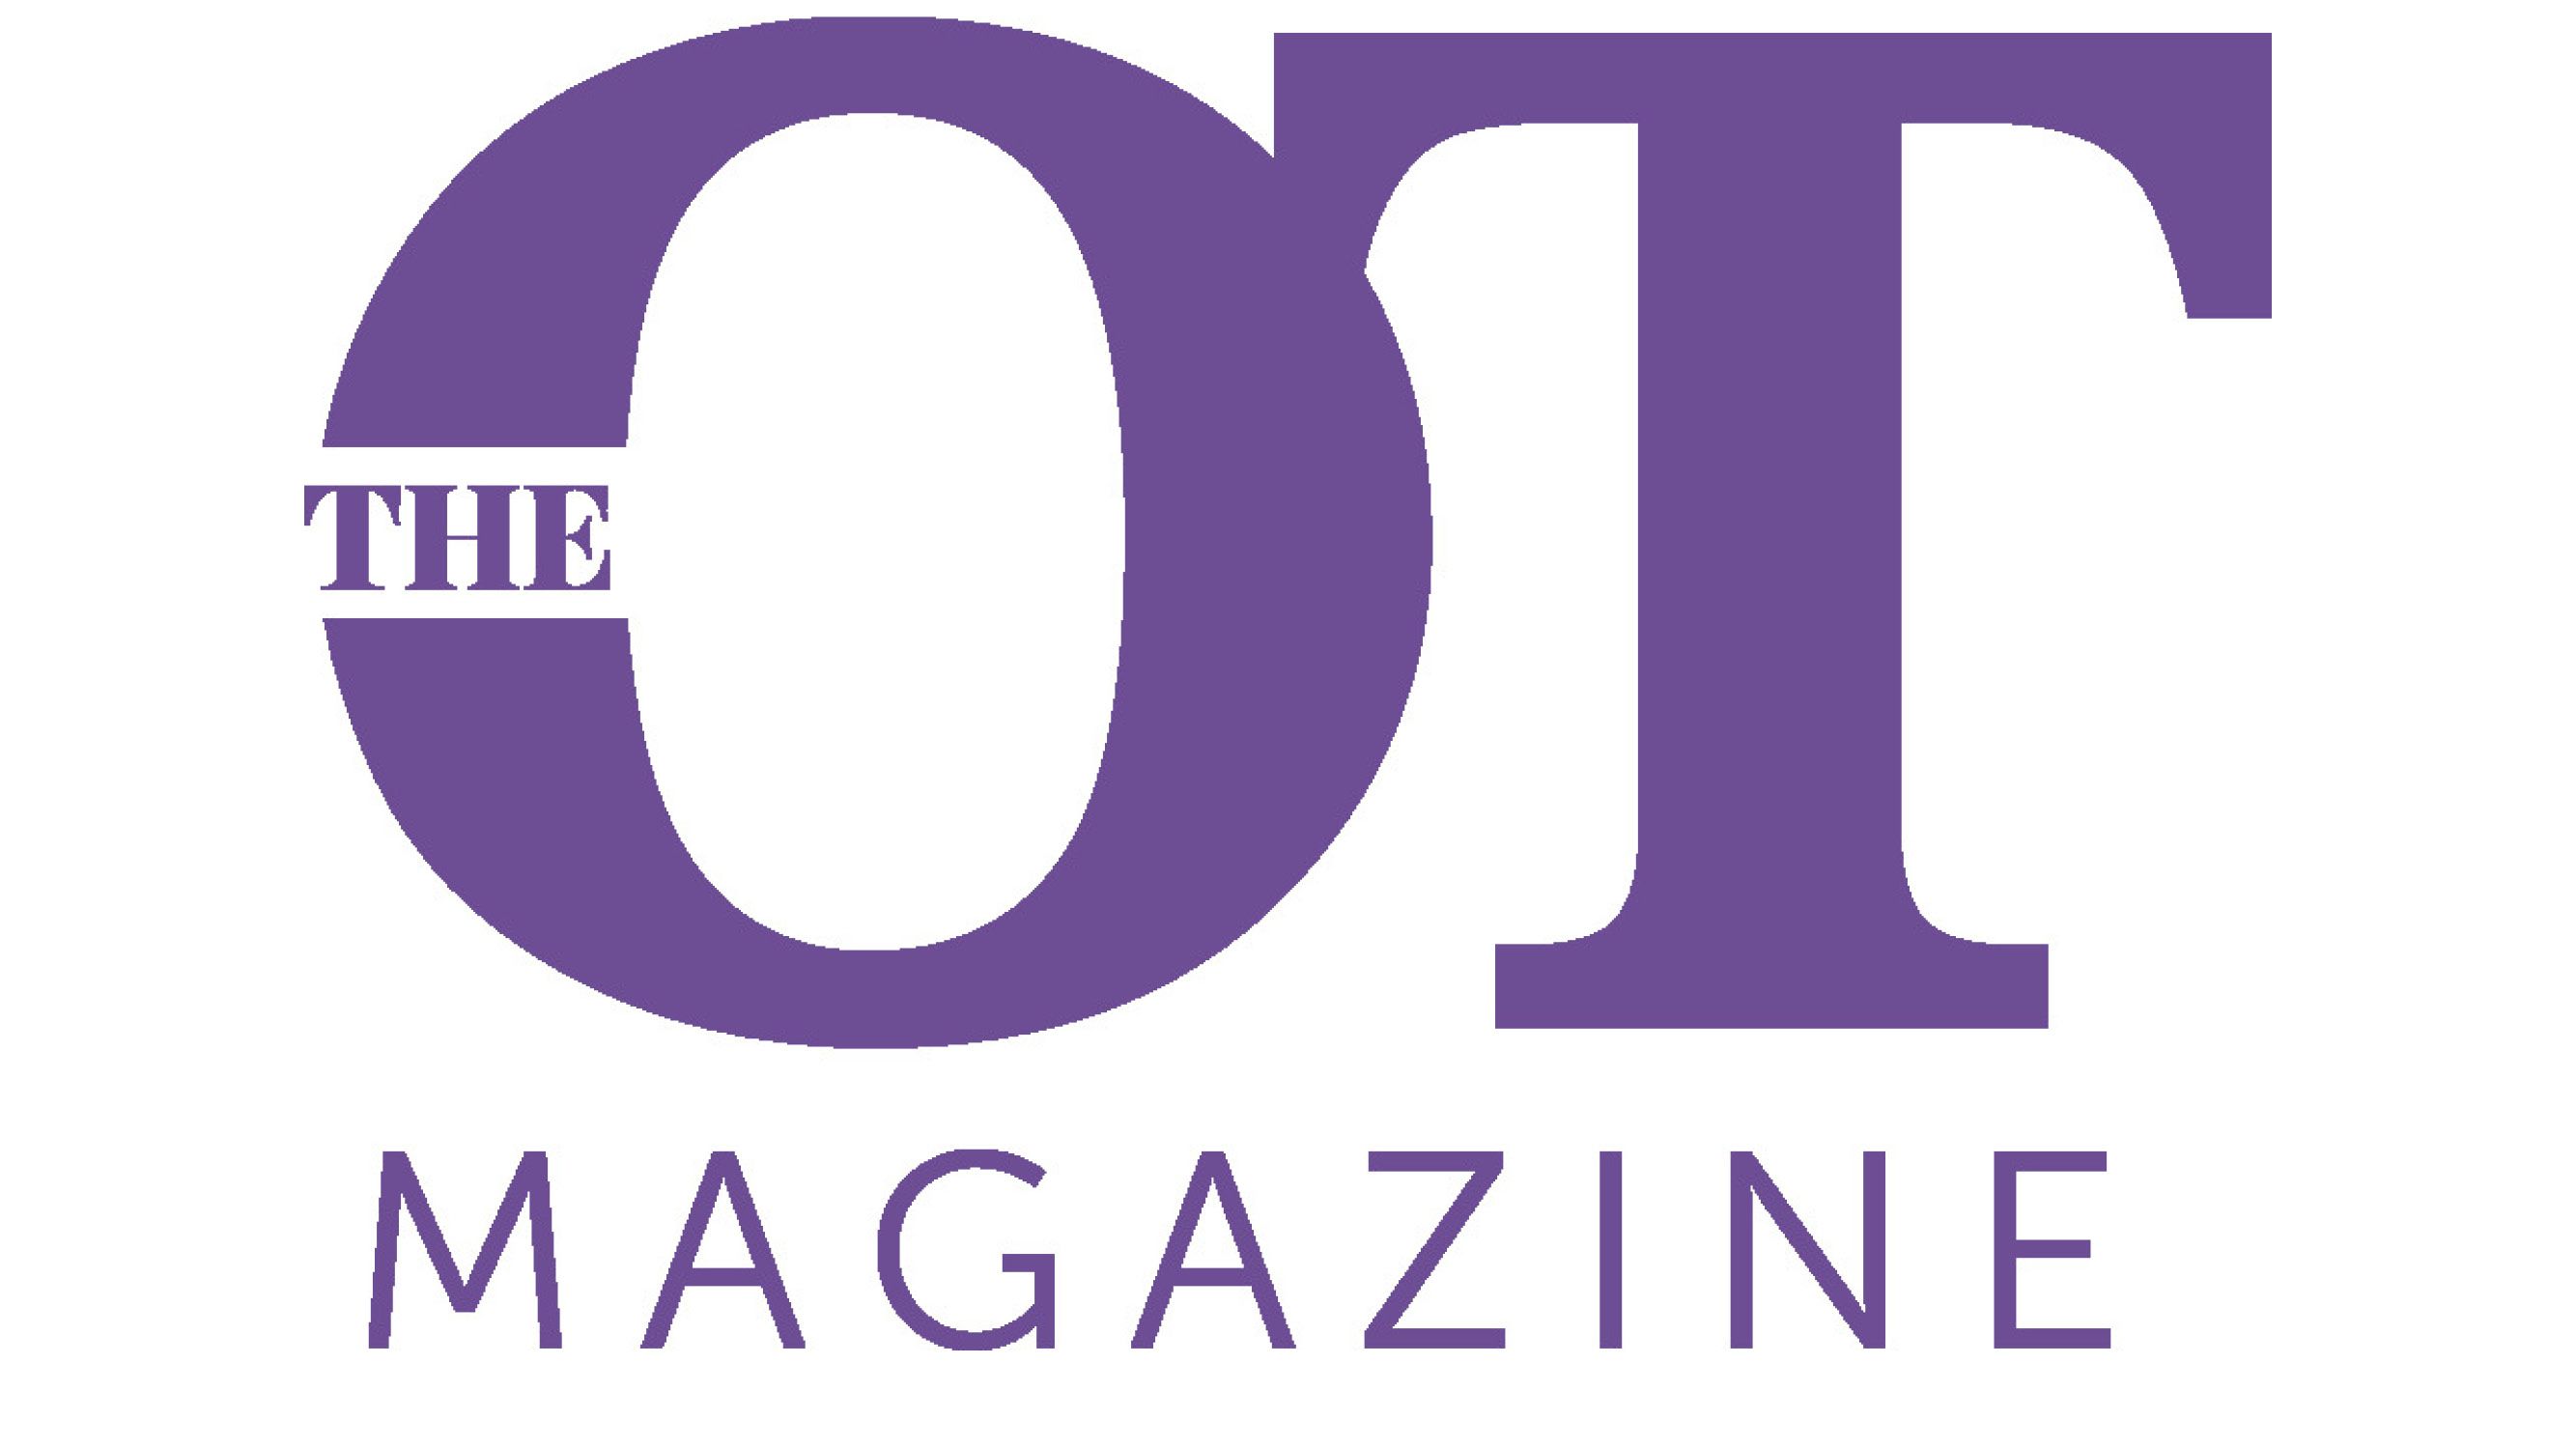 The OT Magazine